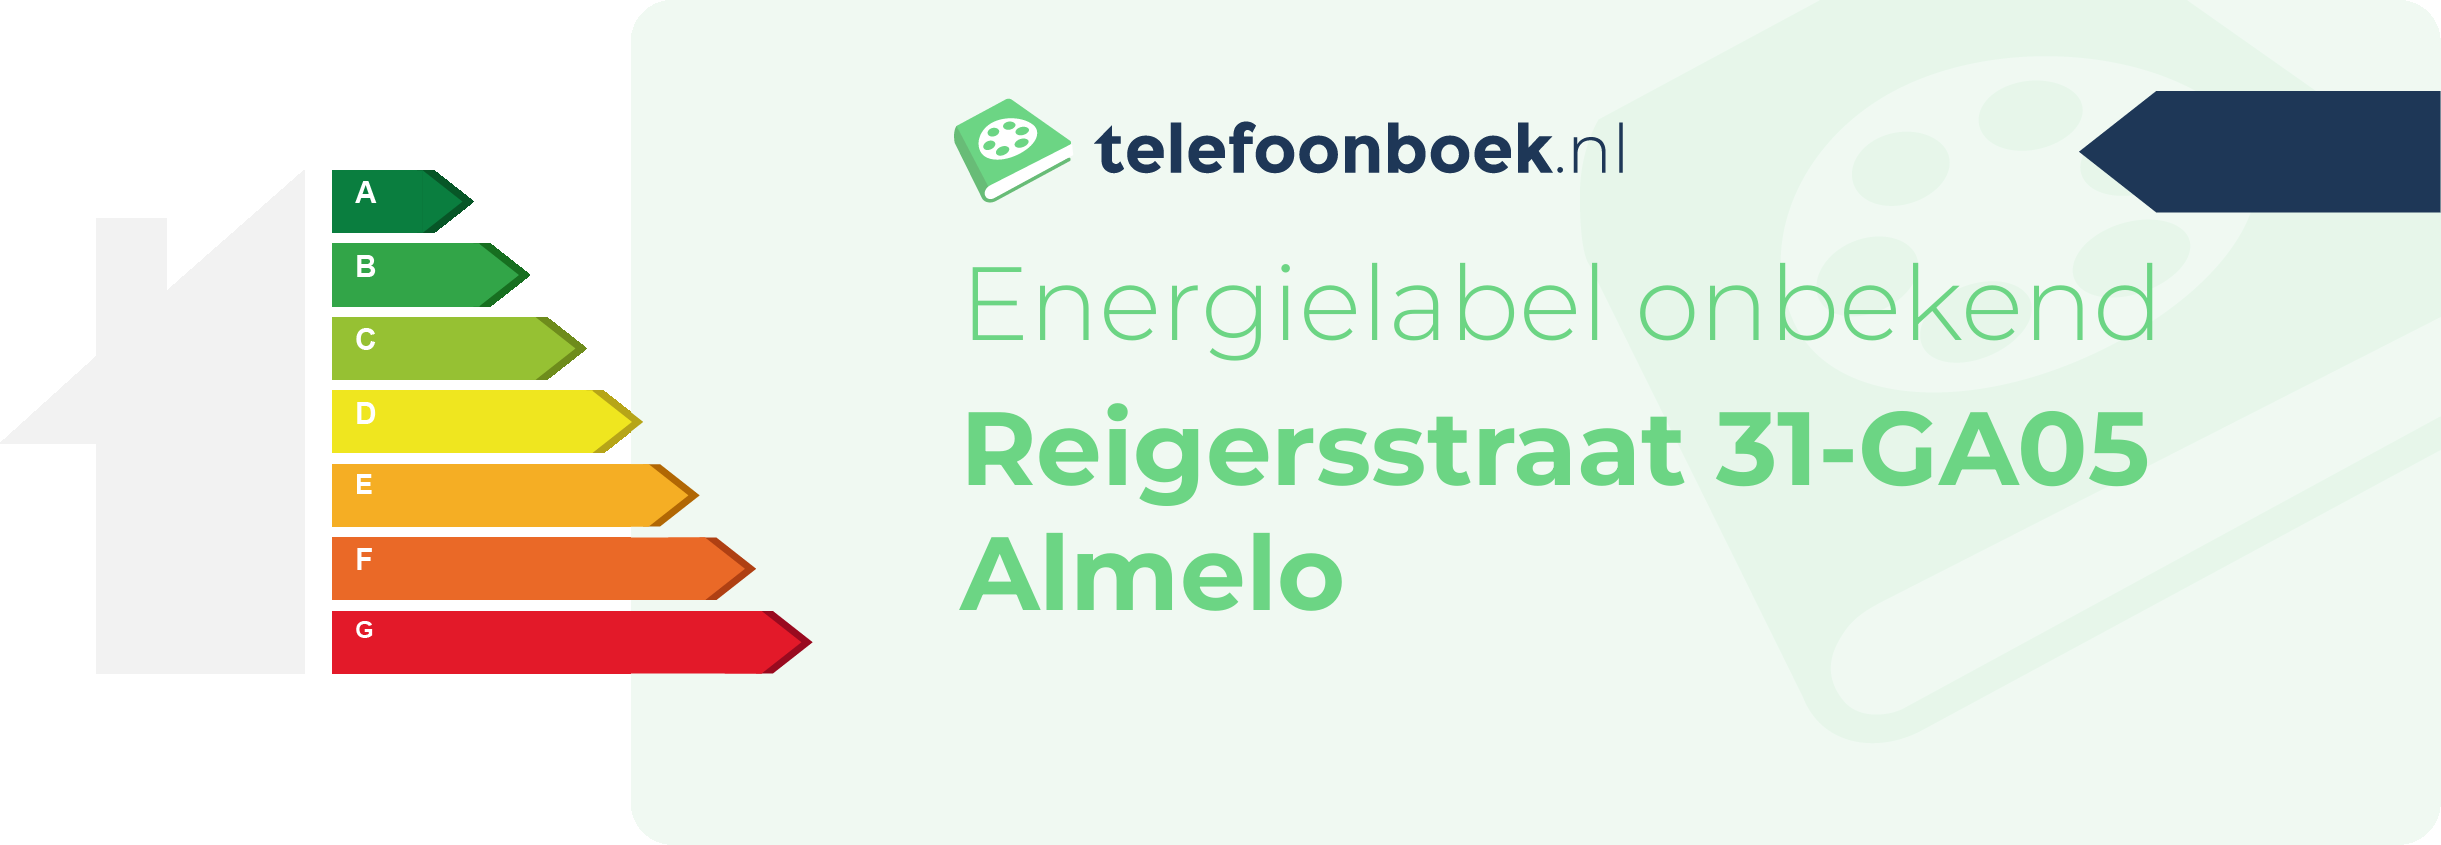 Energielabel Reigersstraat 31-GA05 Almelo